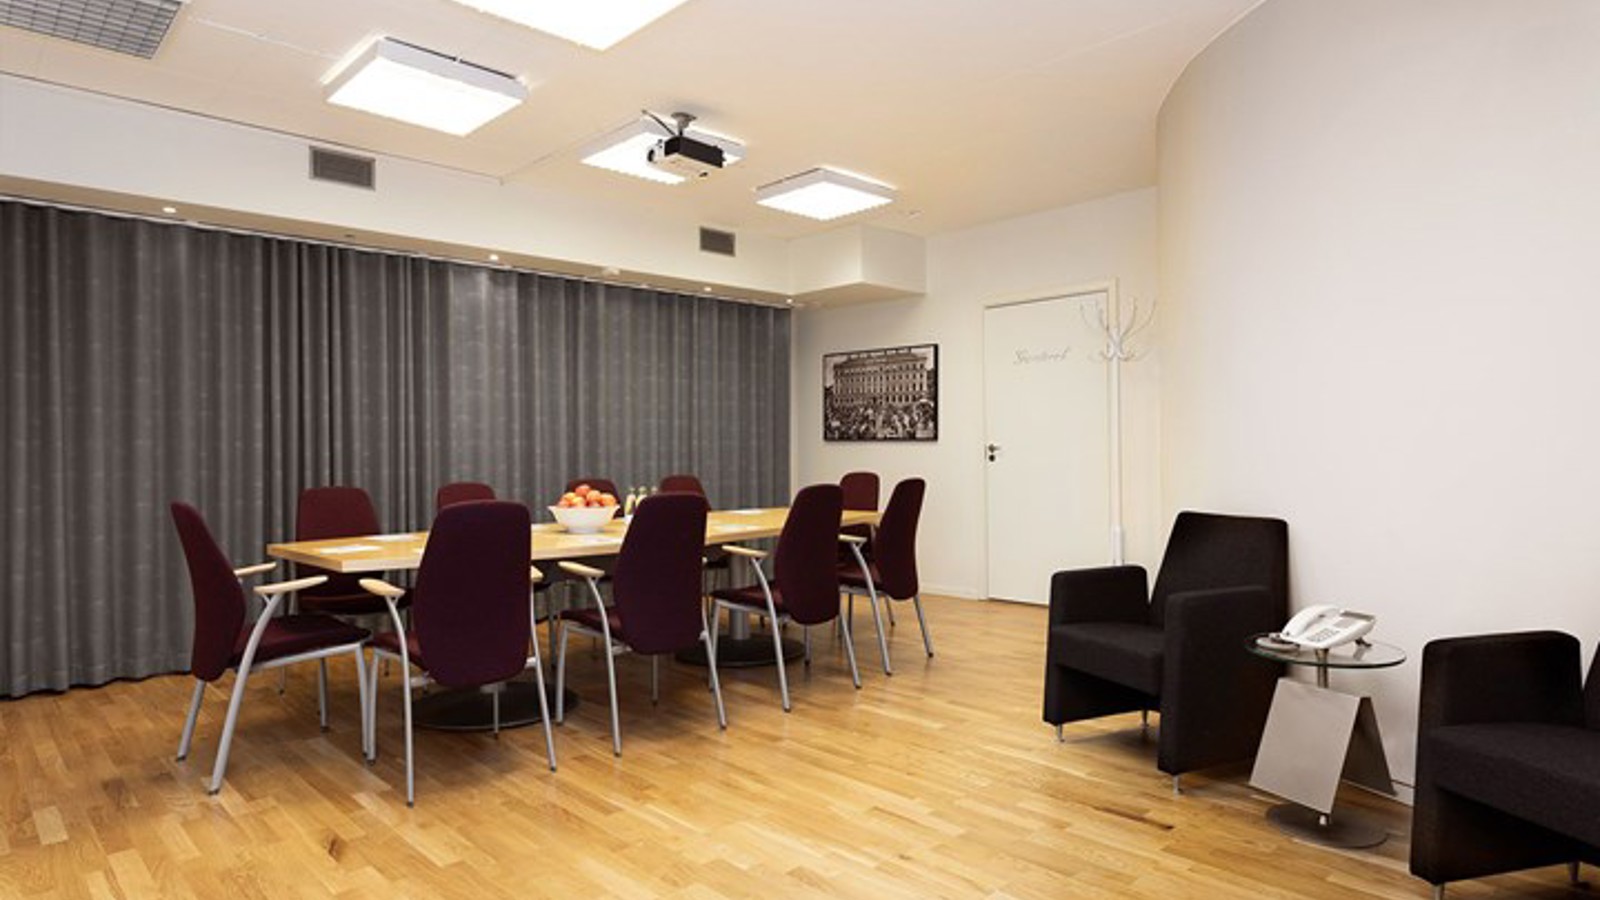 Grupprum, mindre konferensrum med styrelsesittning, trägolv och vita väggar